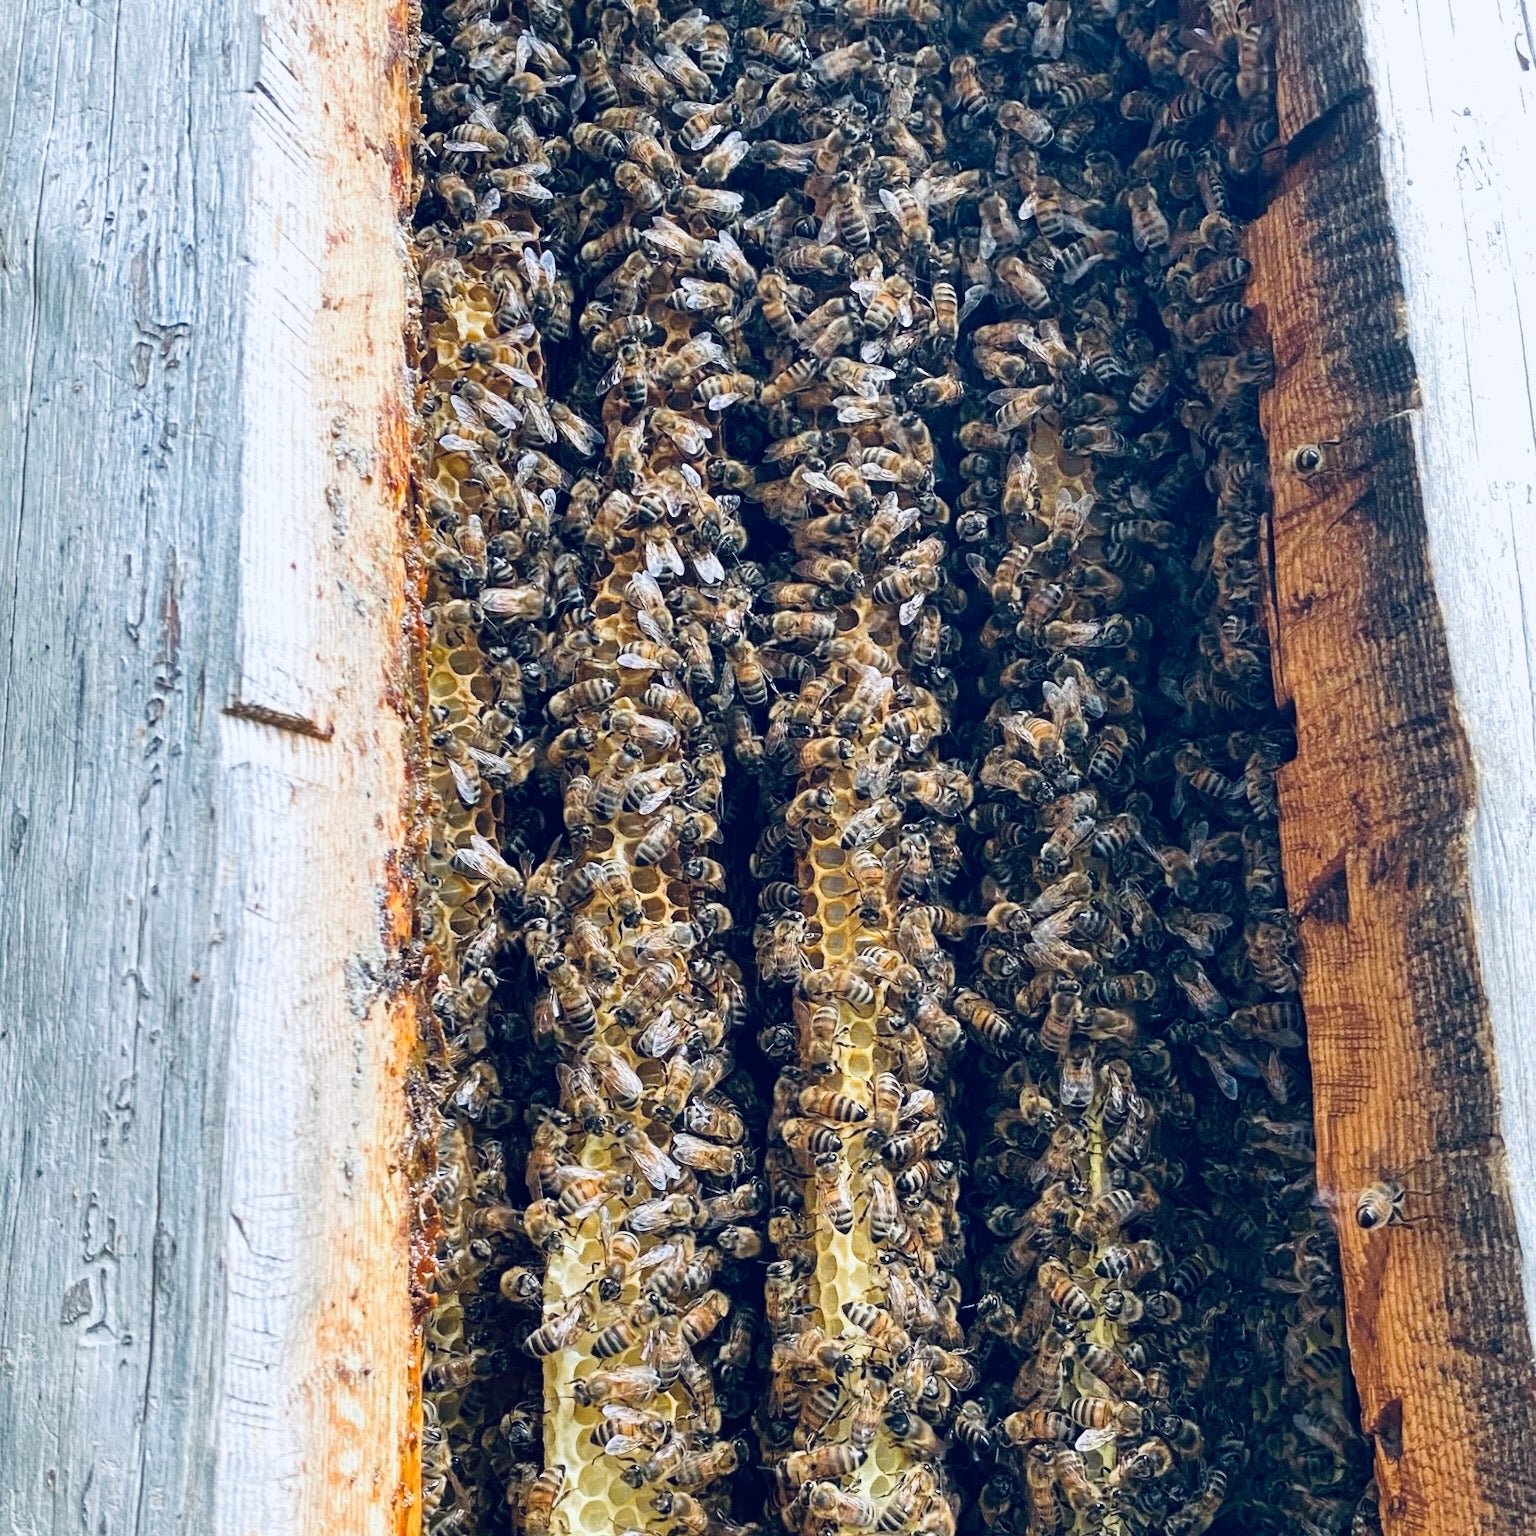 Adoptuj pszczoły miodne